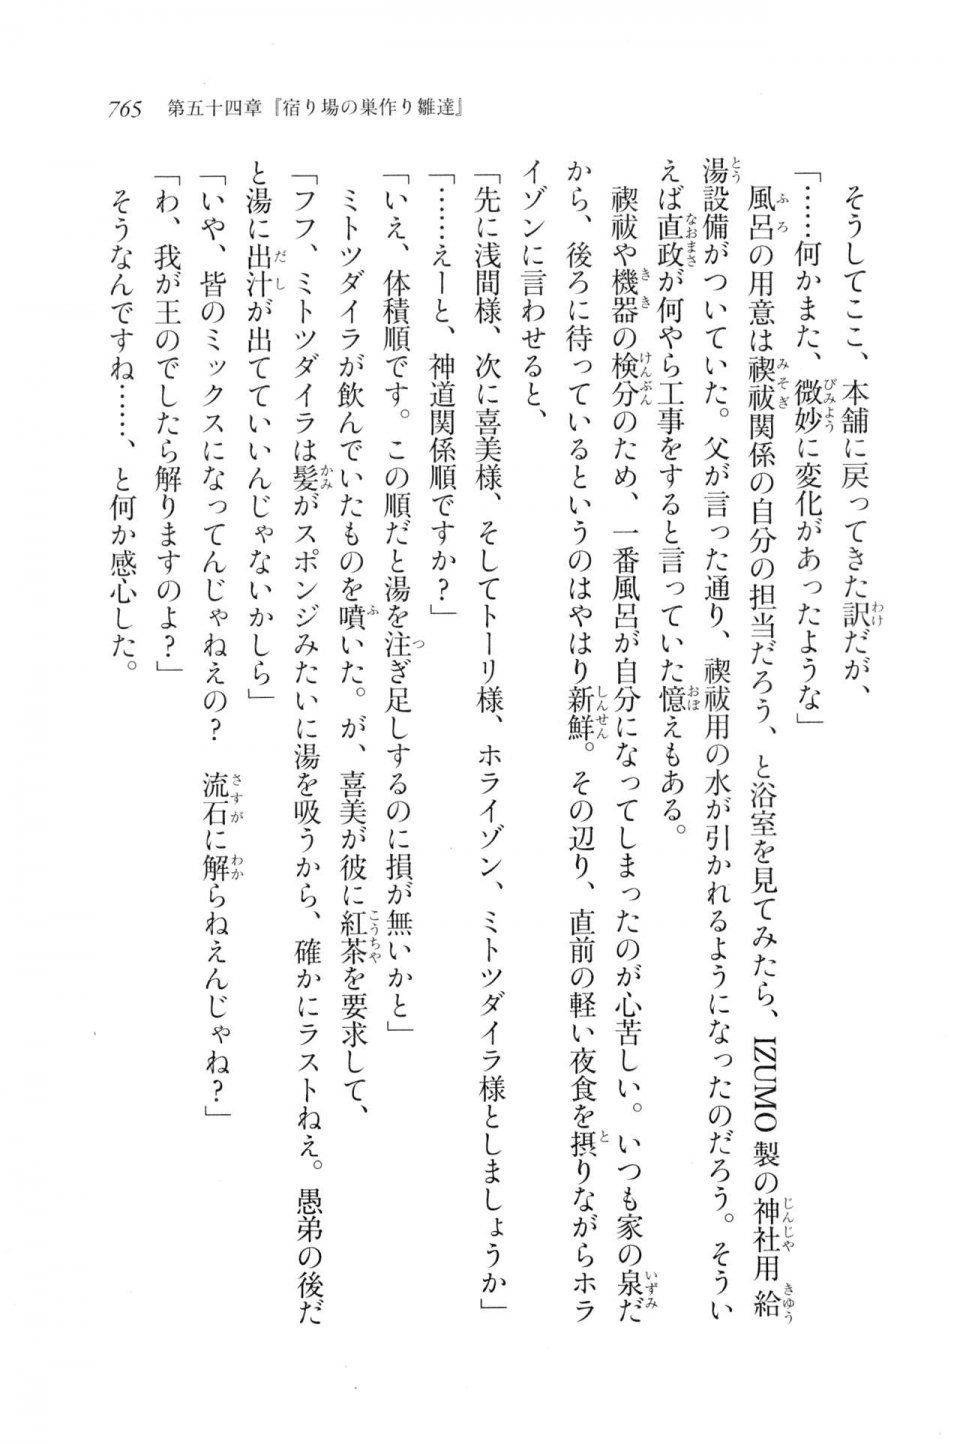 Kyoukai Senjou no Horizon LN Vol 20(8B) - Photo #765